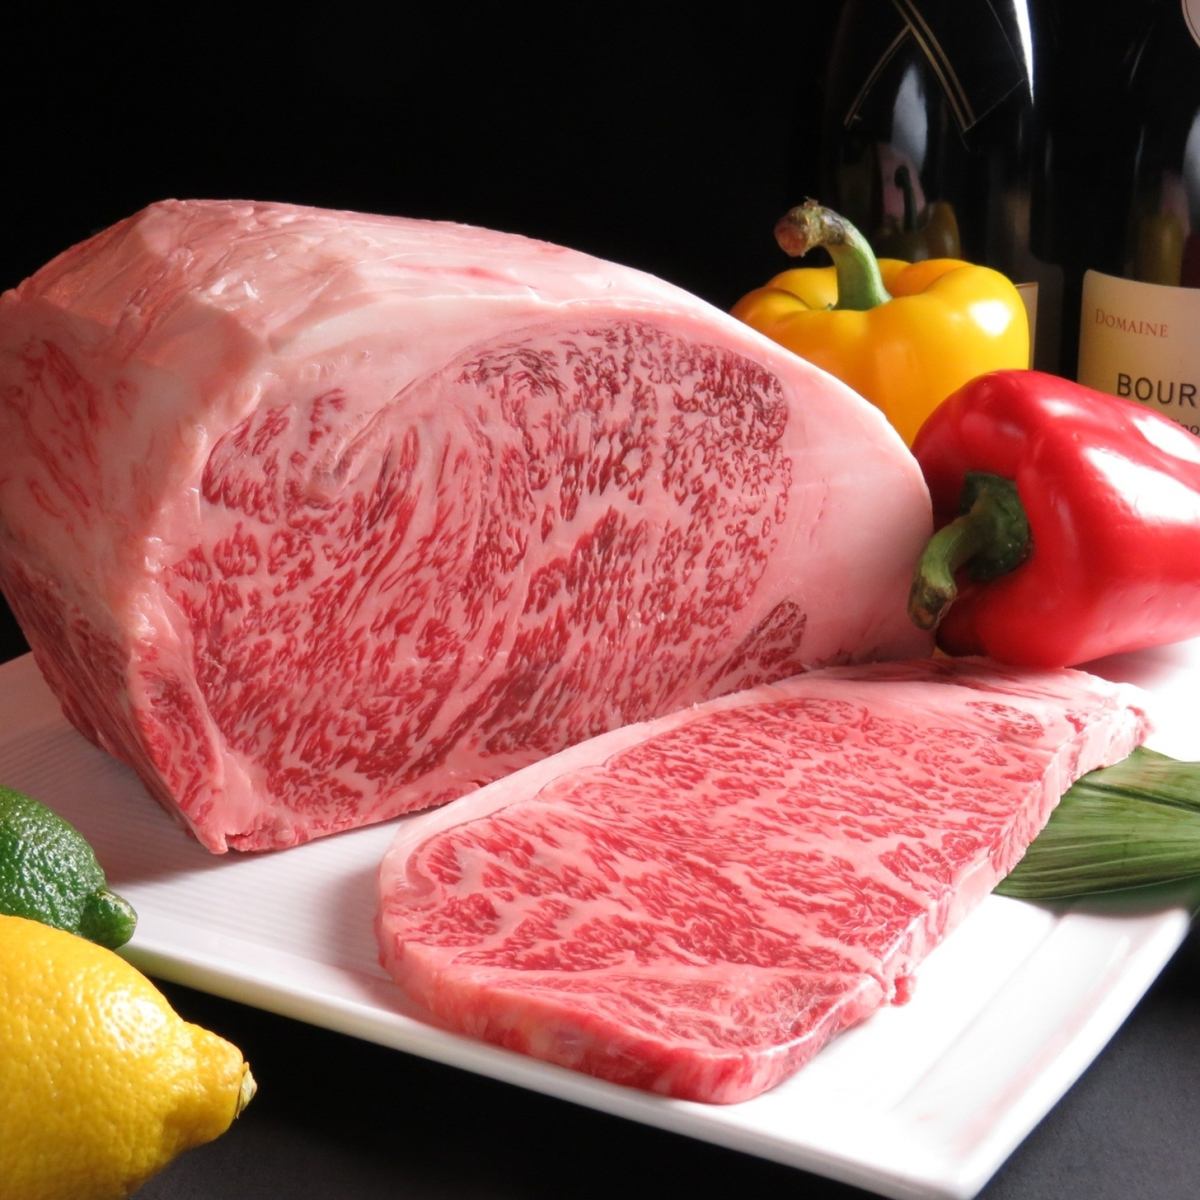 因為我們是直營肉類批發商，所以您可以以合理的價格買到A5等級的松阪牛肉。